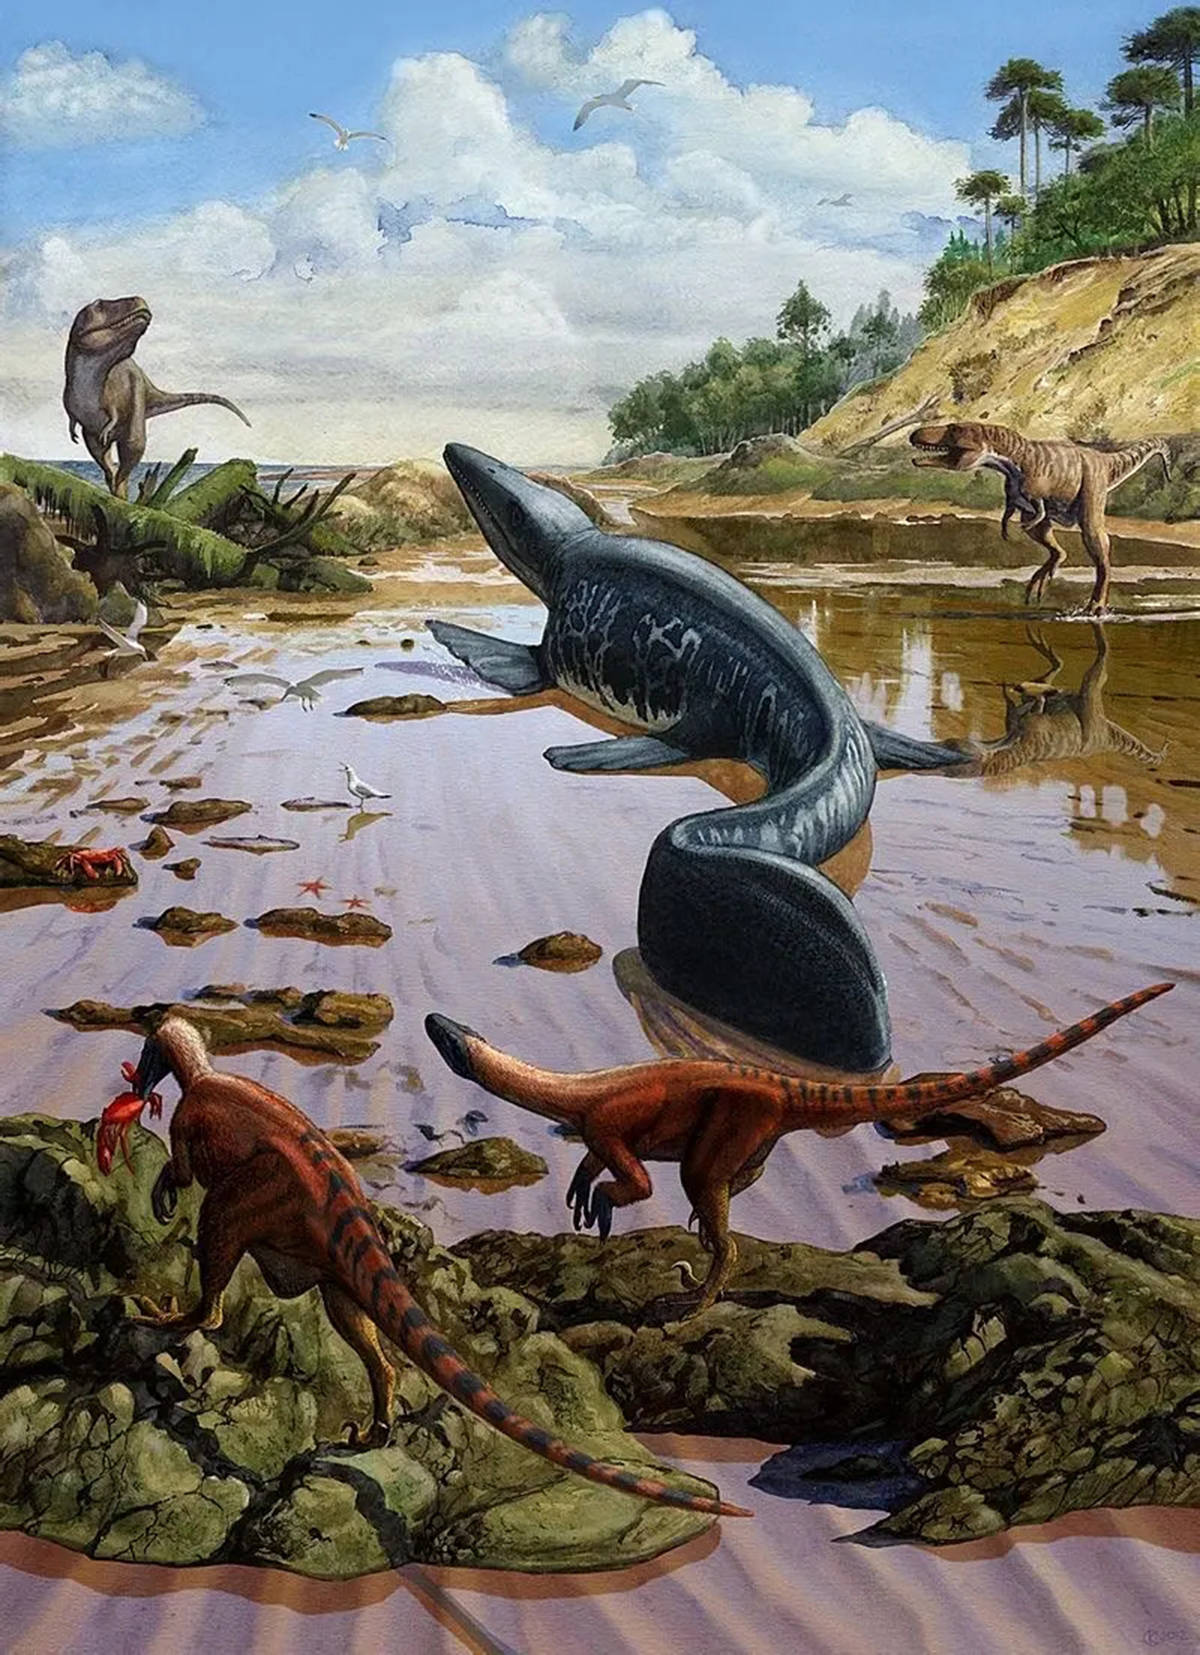 白垩纪晚期制霸海洋的沧龙从何而来如何长成17米长的森然巨物